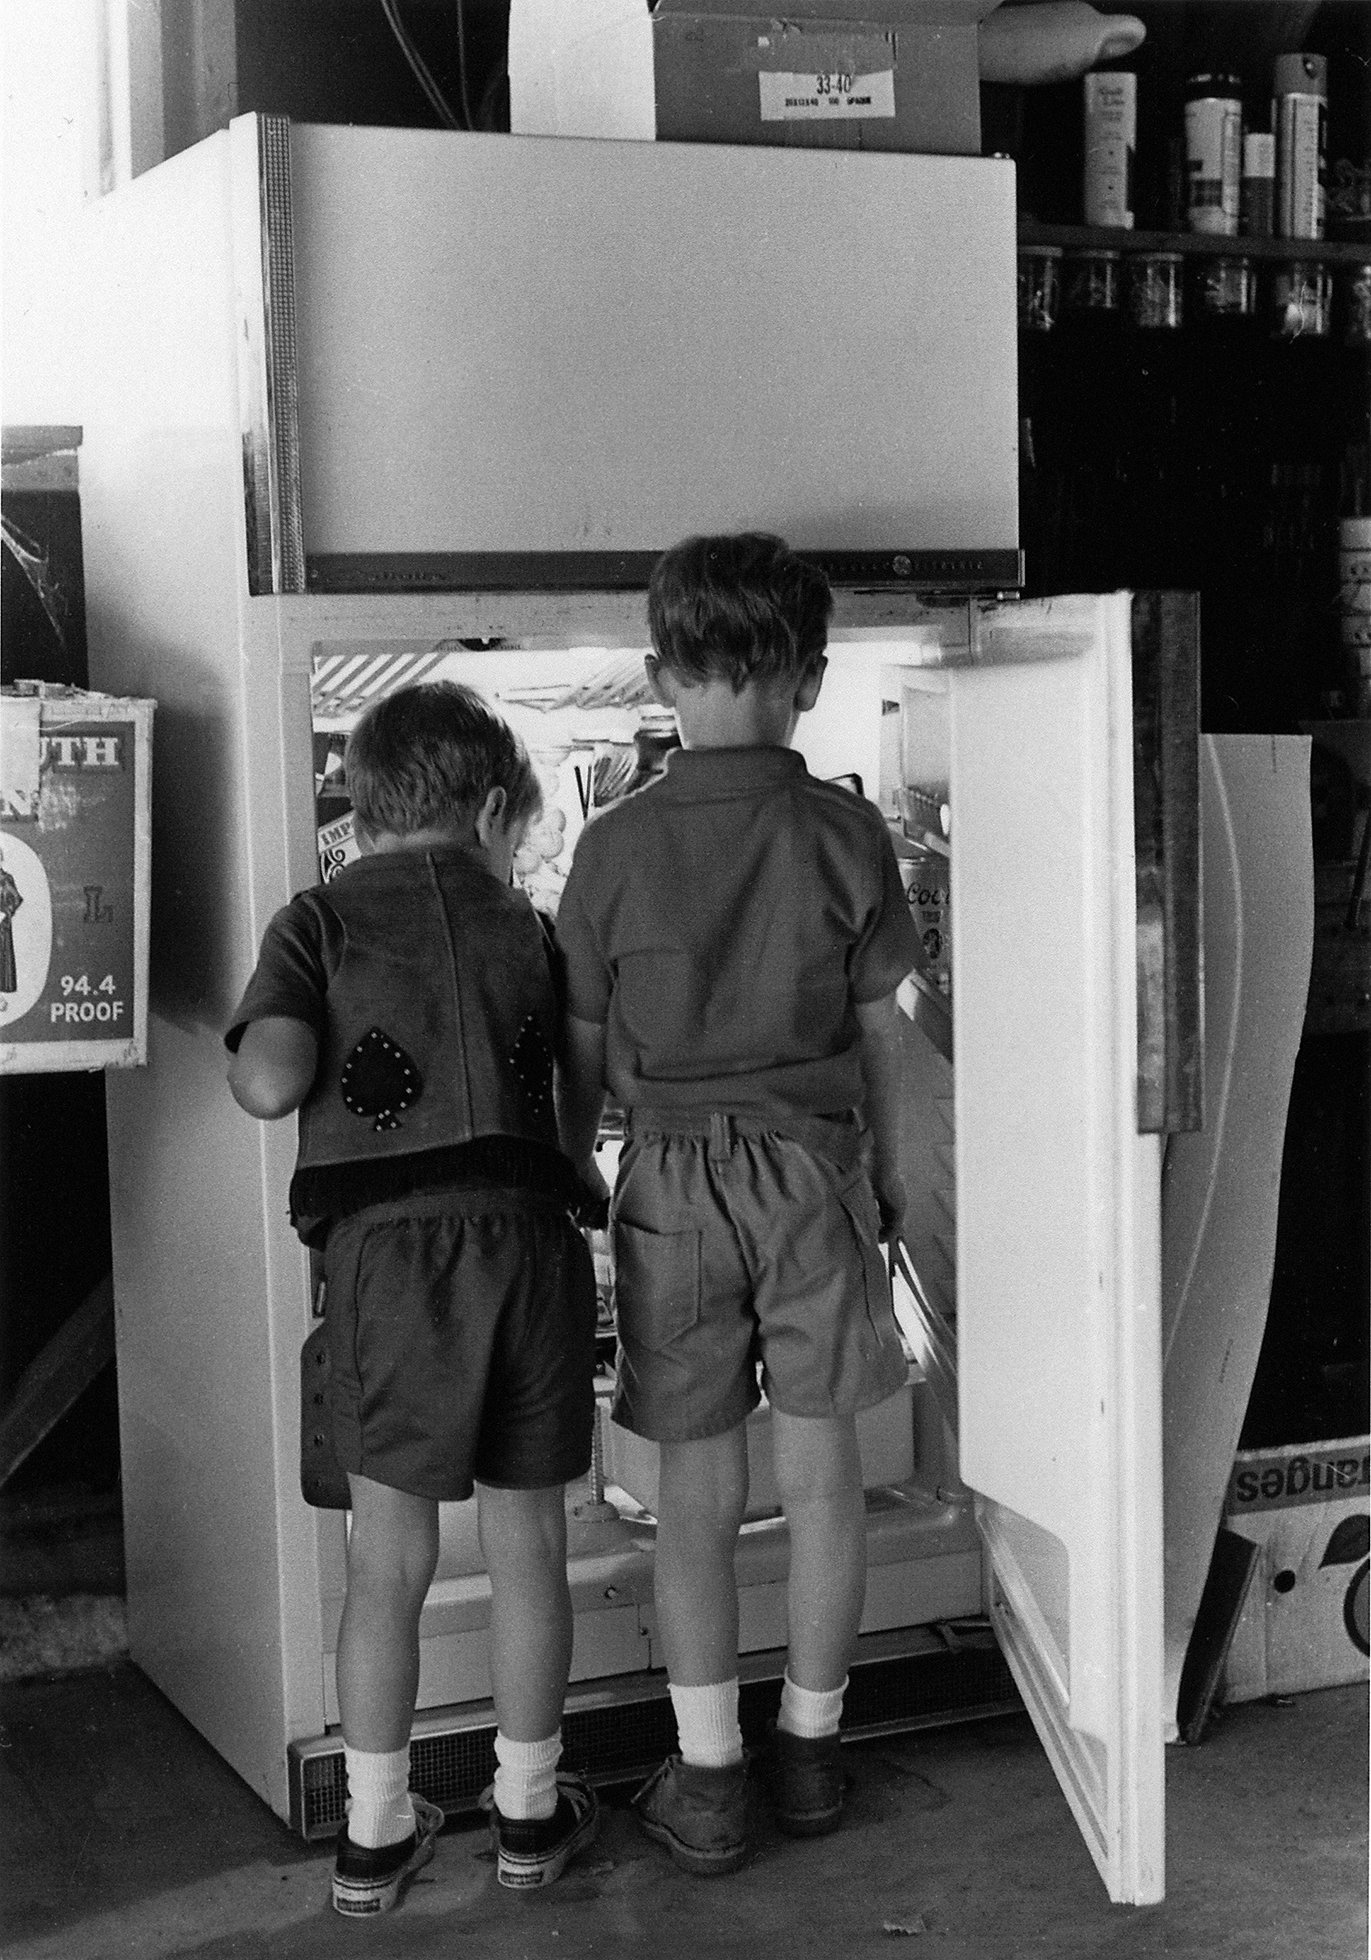 465 - Carter - The Refrigerator